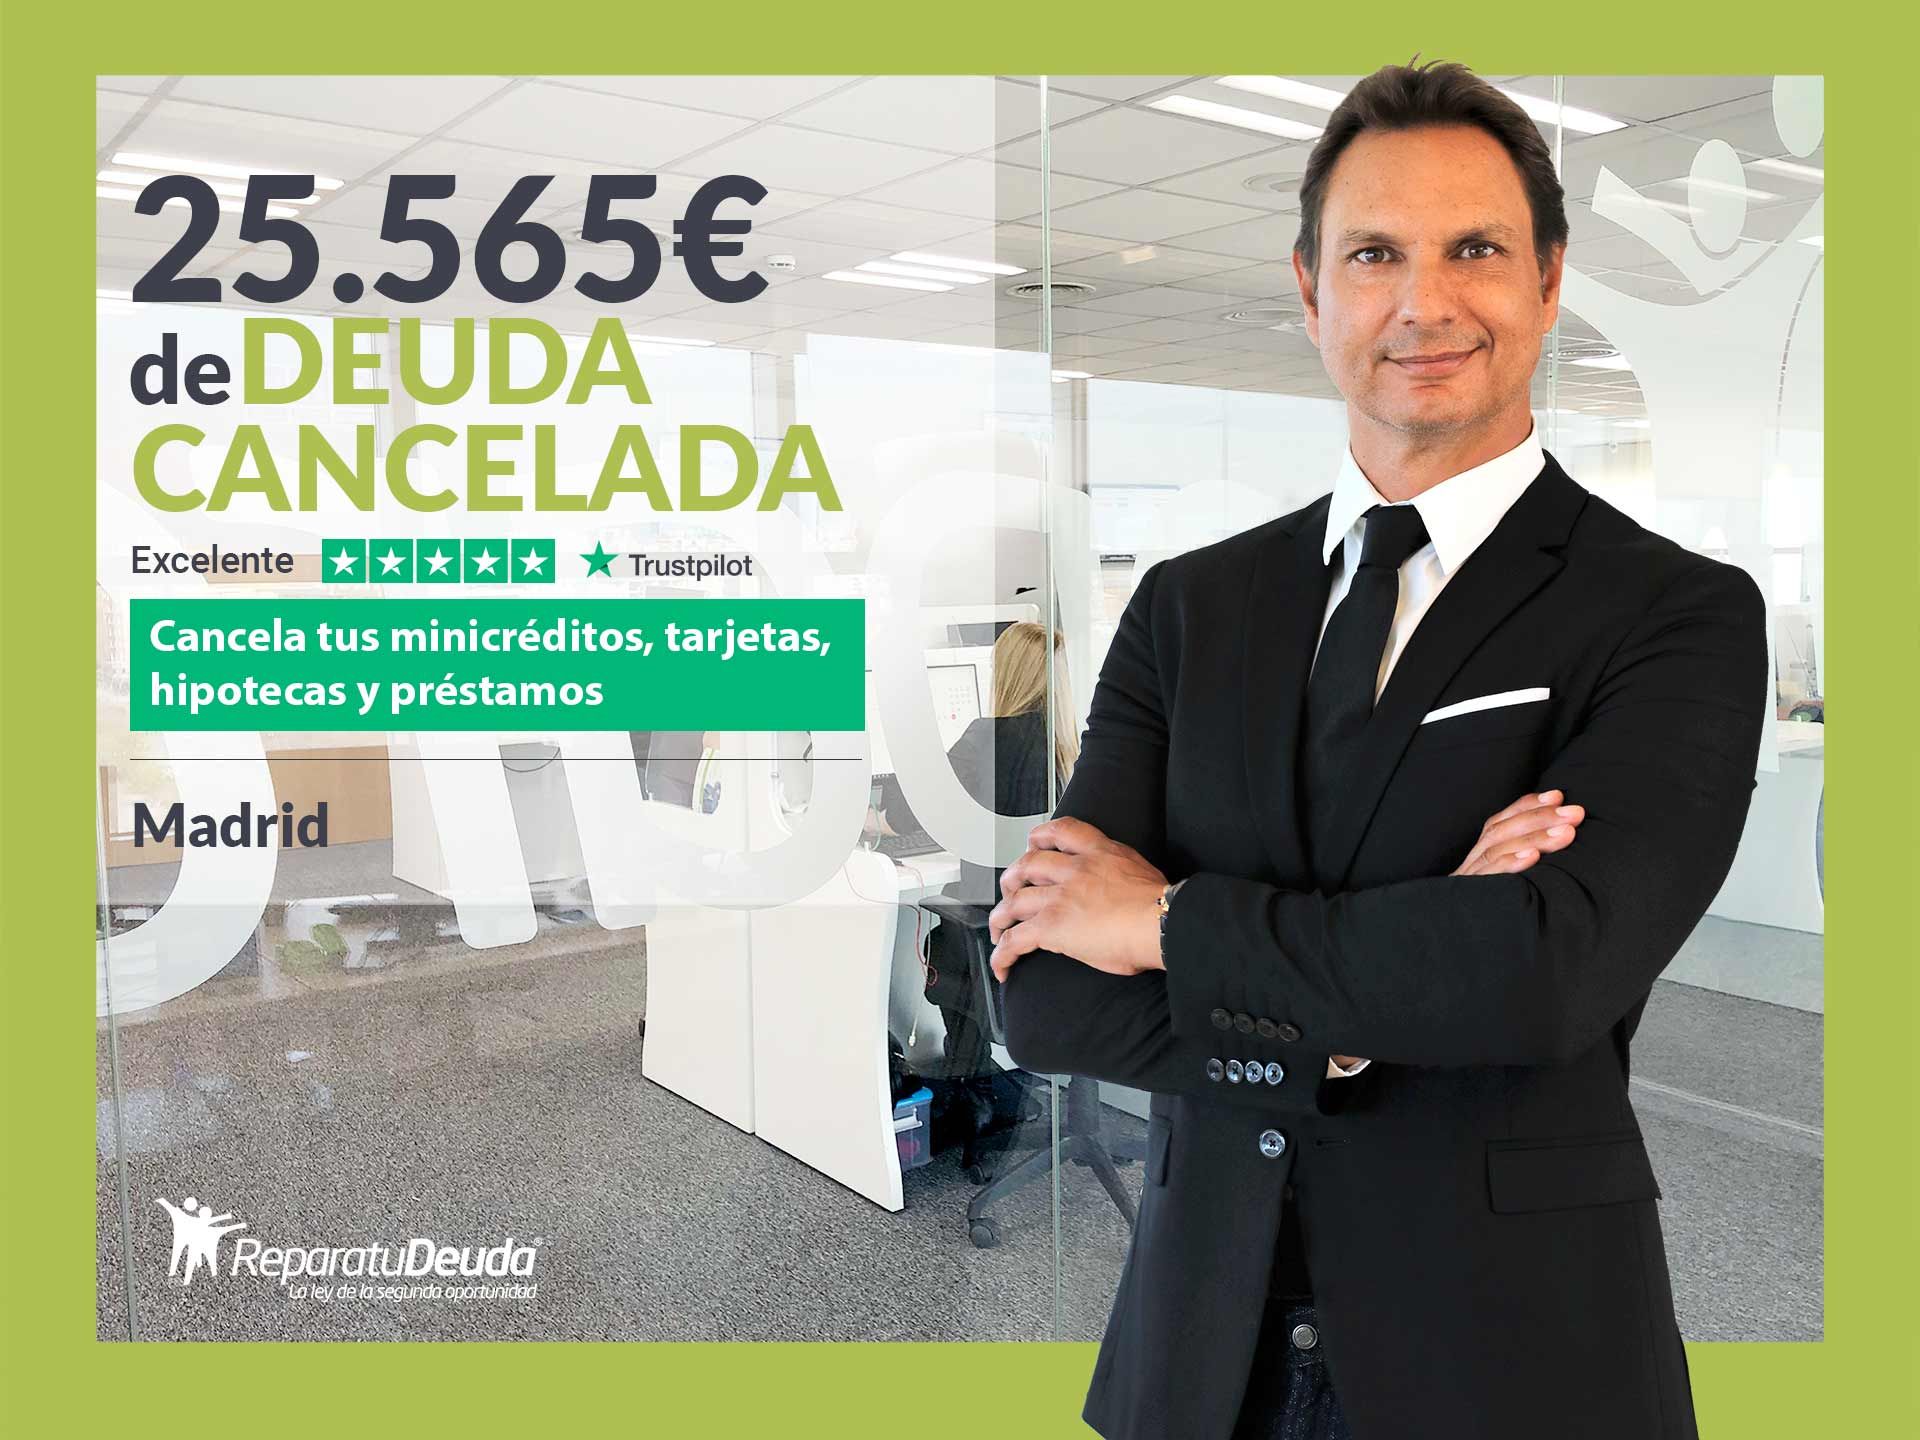 Repara tu Deuda Abogados cancela 25.565? en Madrid con la Ley de Segunda Oportunidad